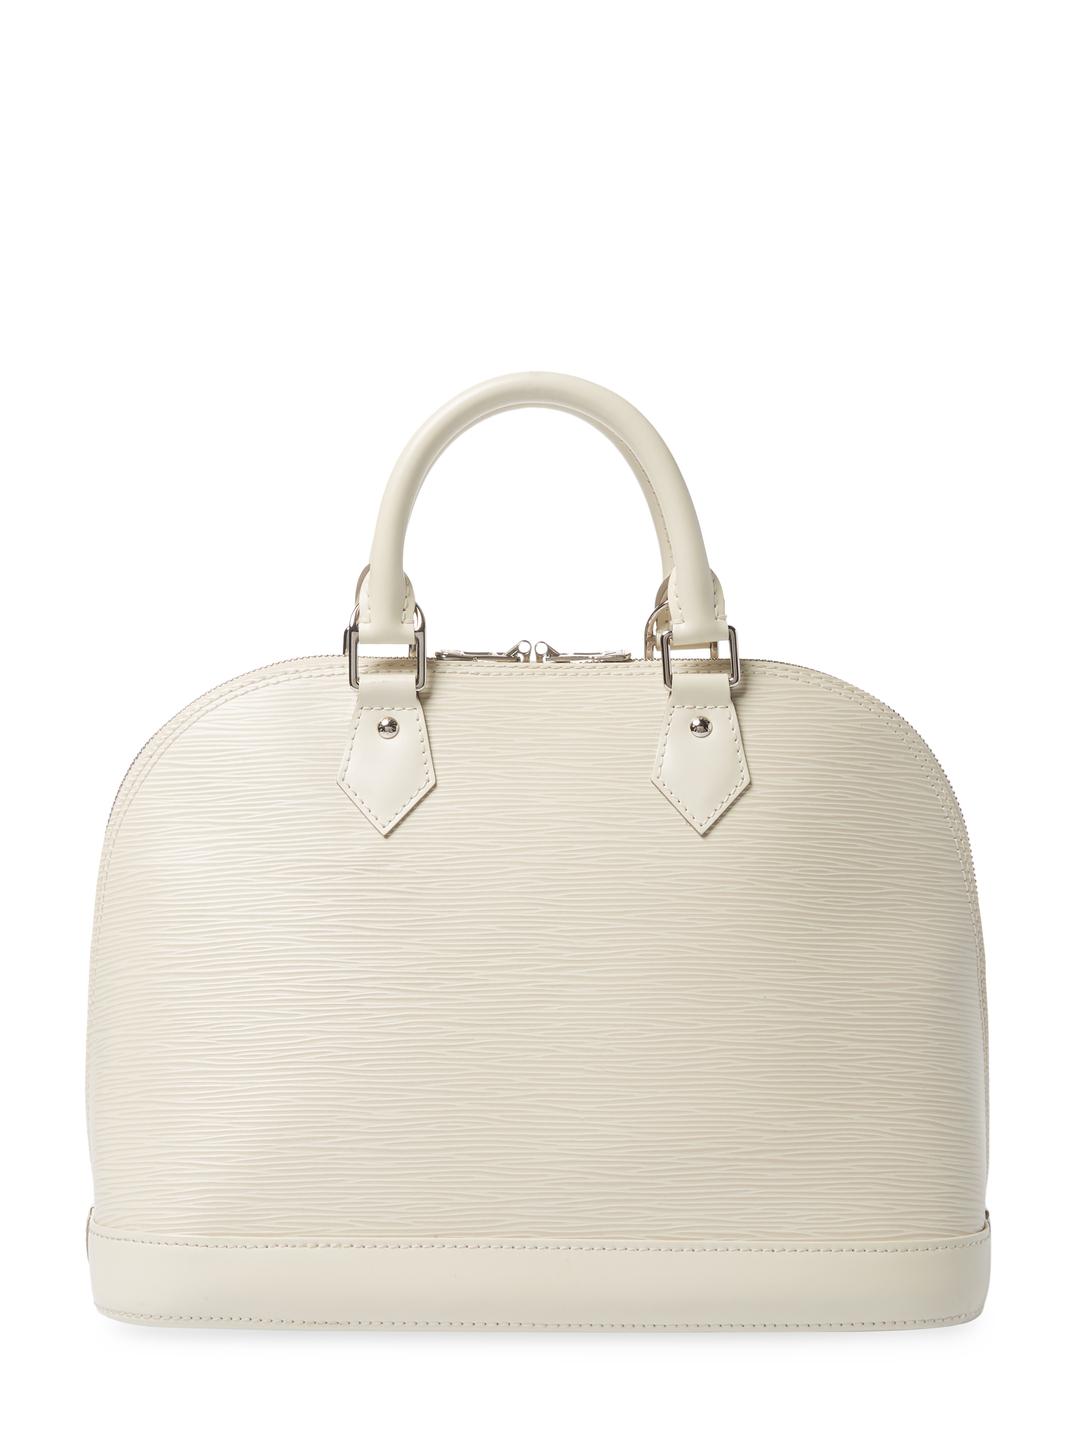 Louis Vuitton Vintage White Epi Ab Alma Pm Bag